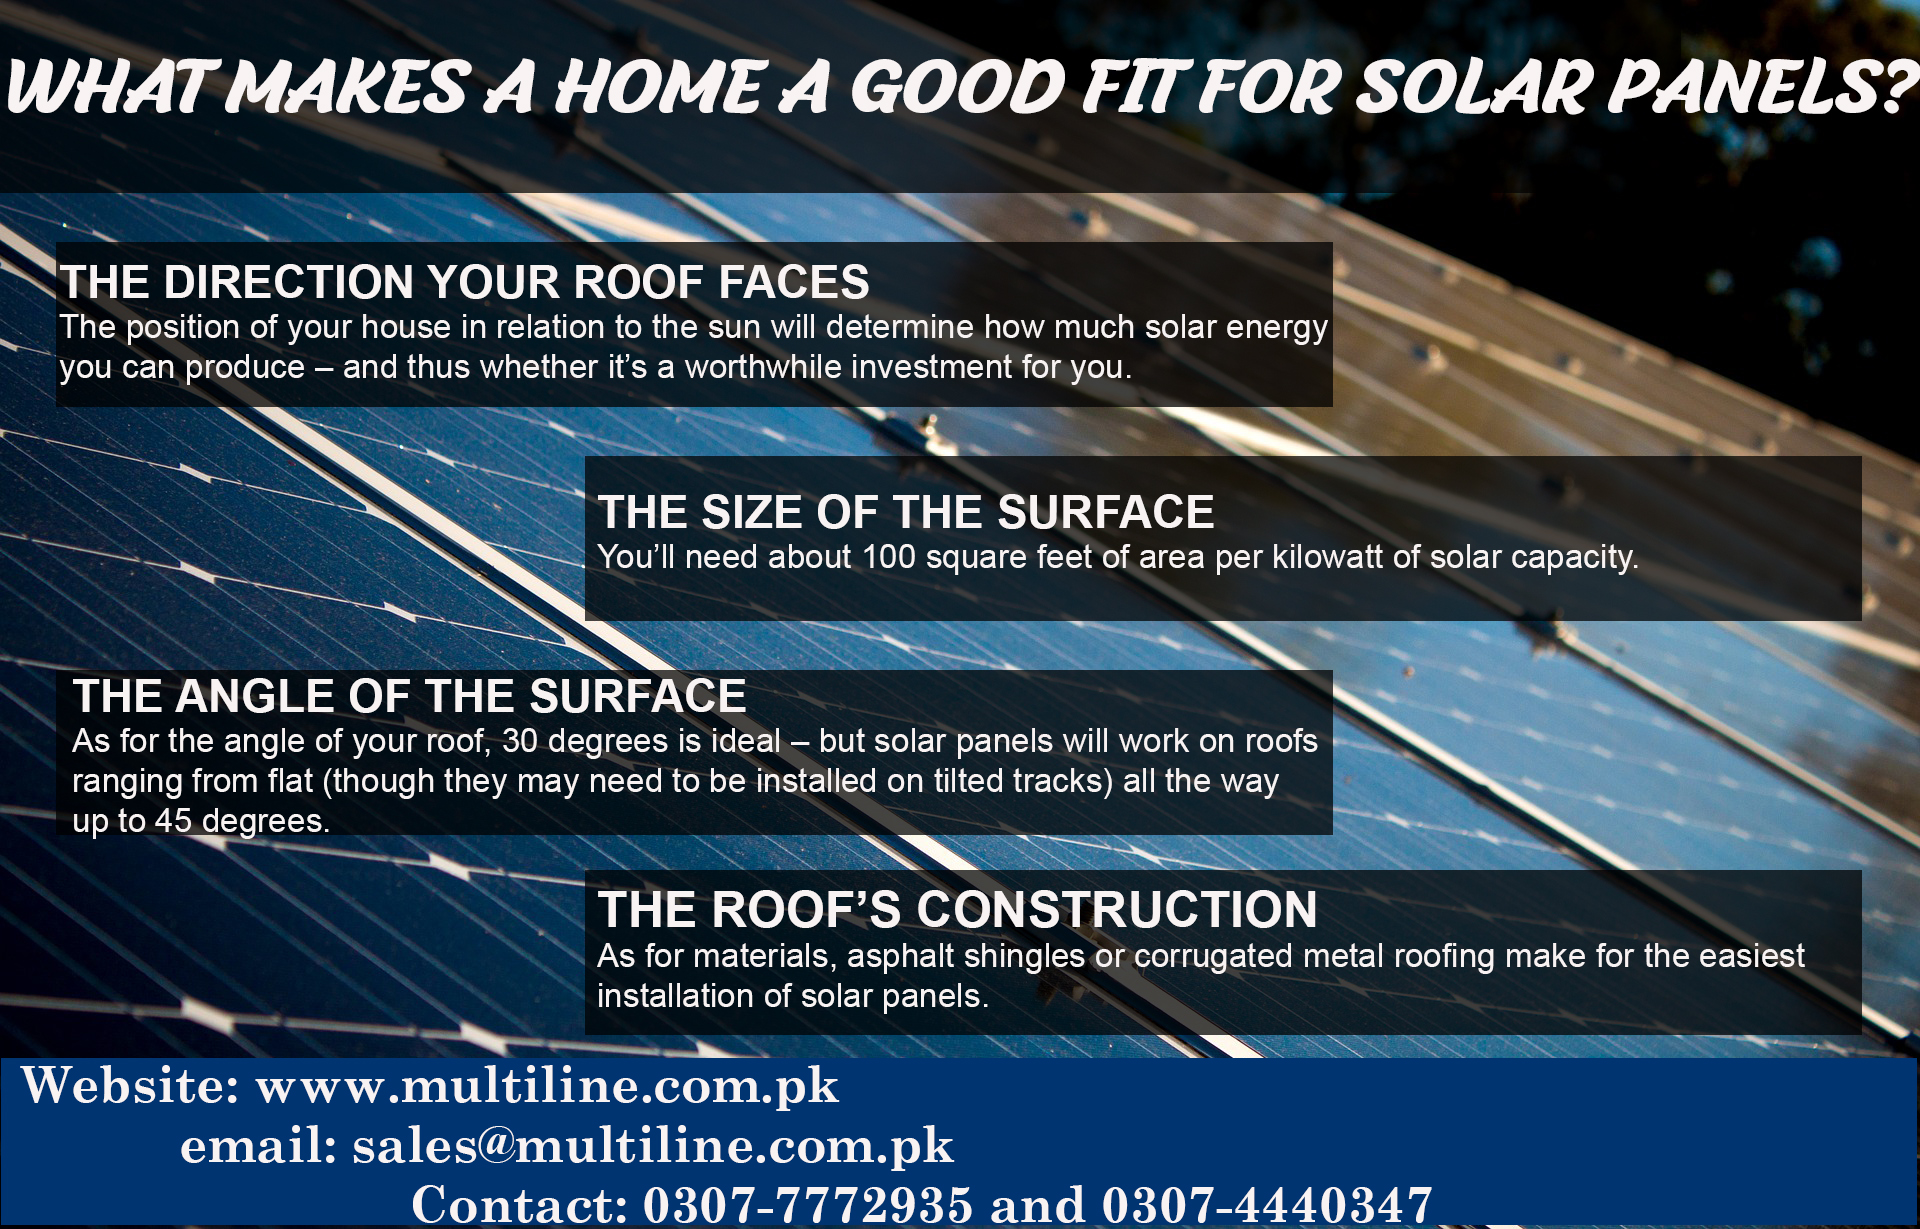 best solar panels in pakistan